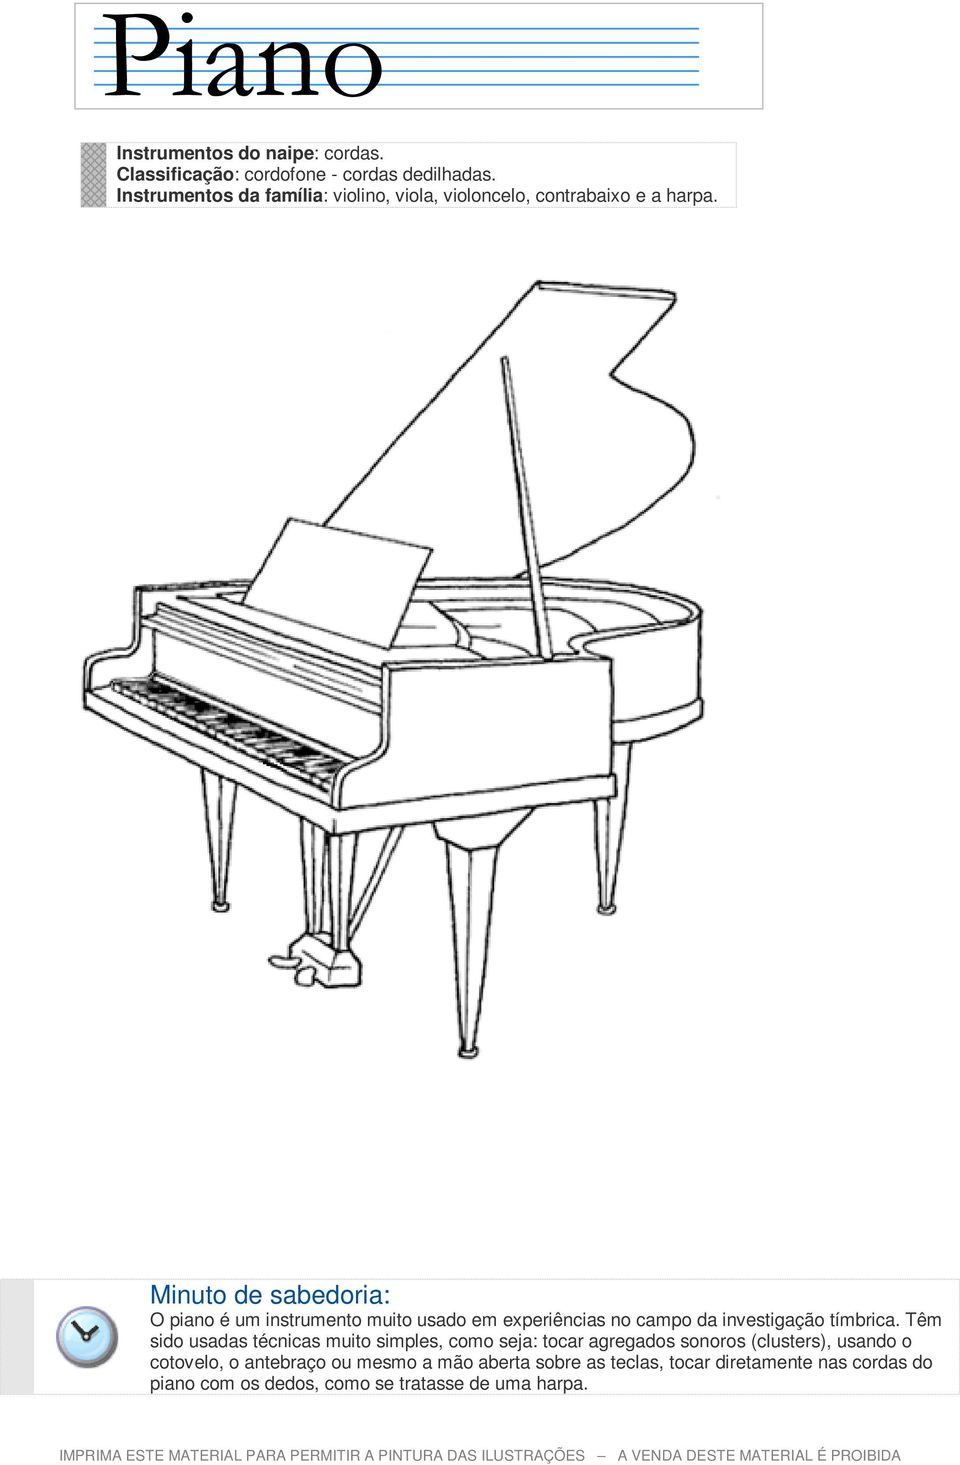 O piano é um instrumento muito usado em experiências no campo da investigação tímbrica.